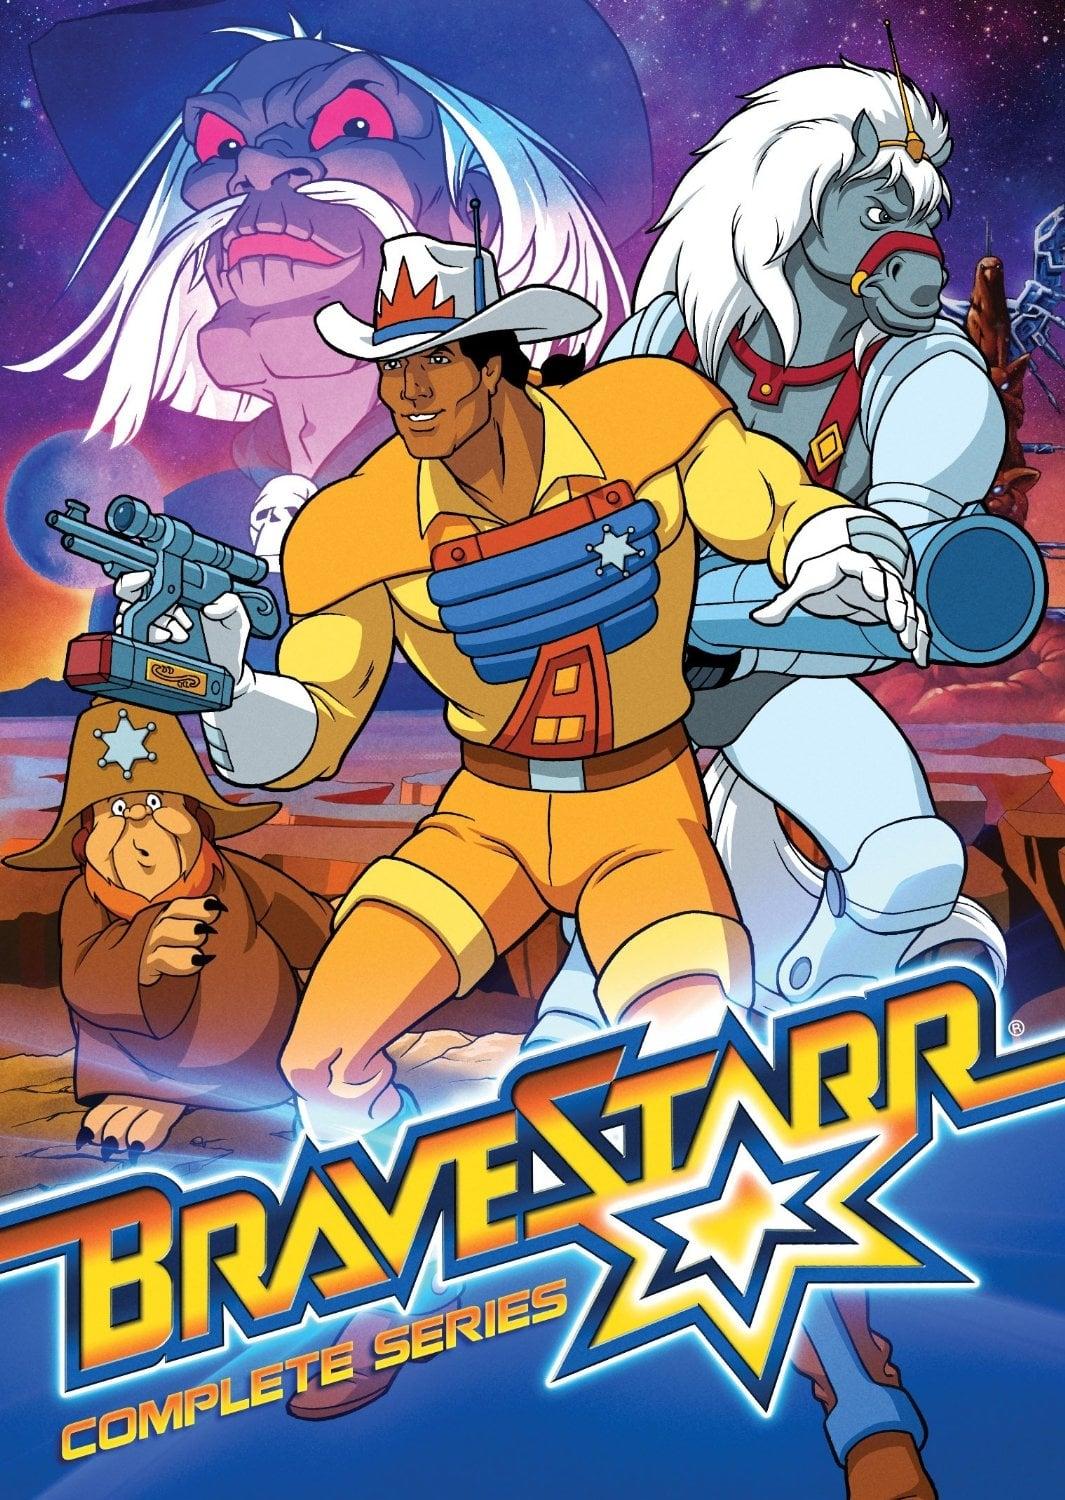 BraveStarr poster